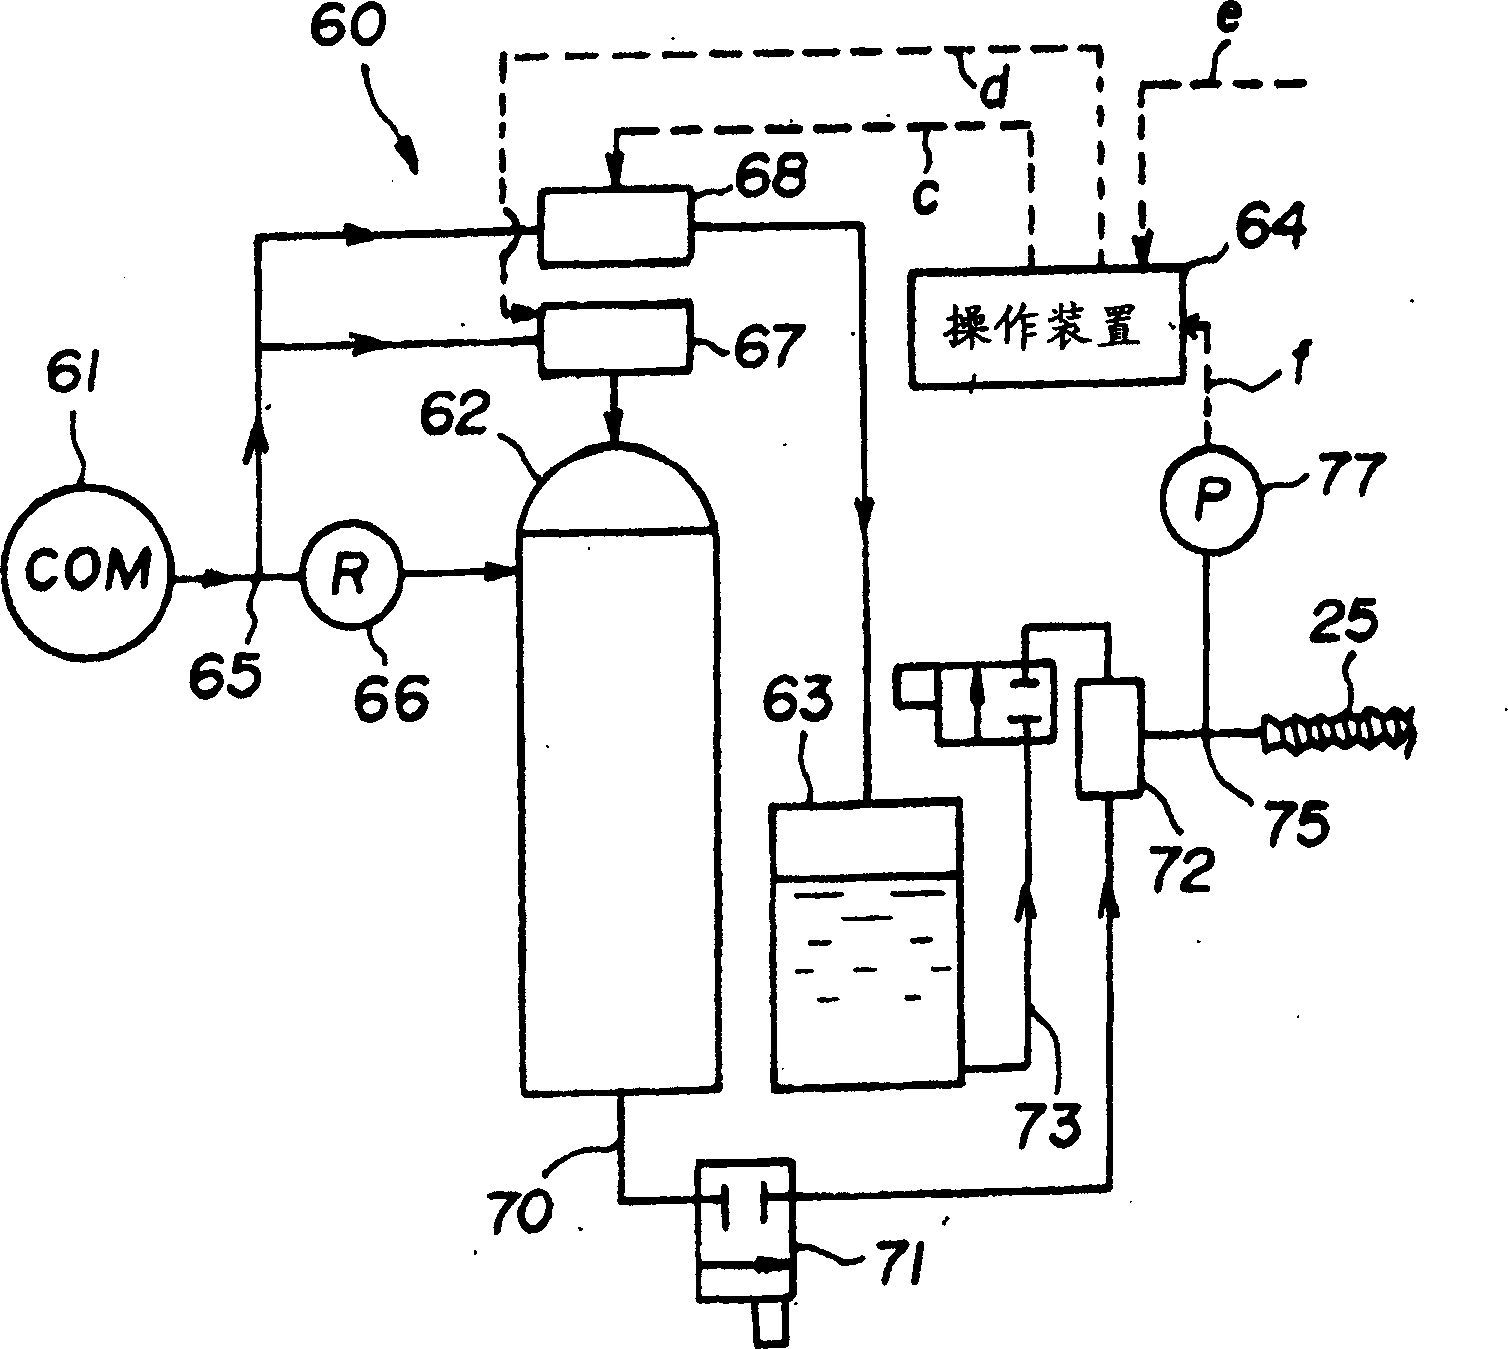 Method of coating lubricant in metallic injection machine